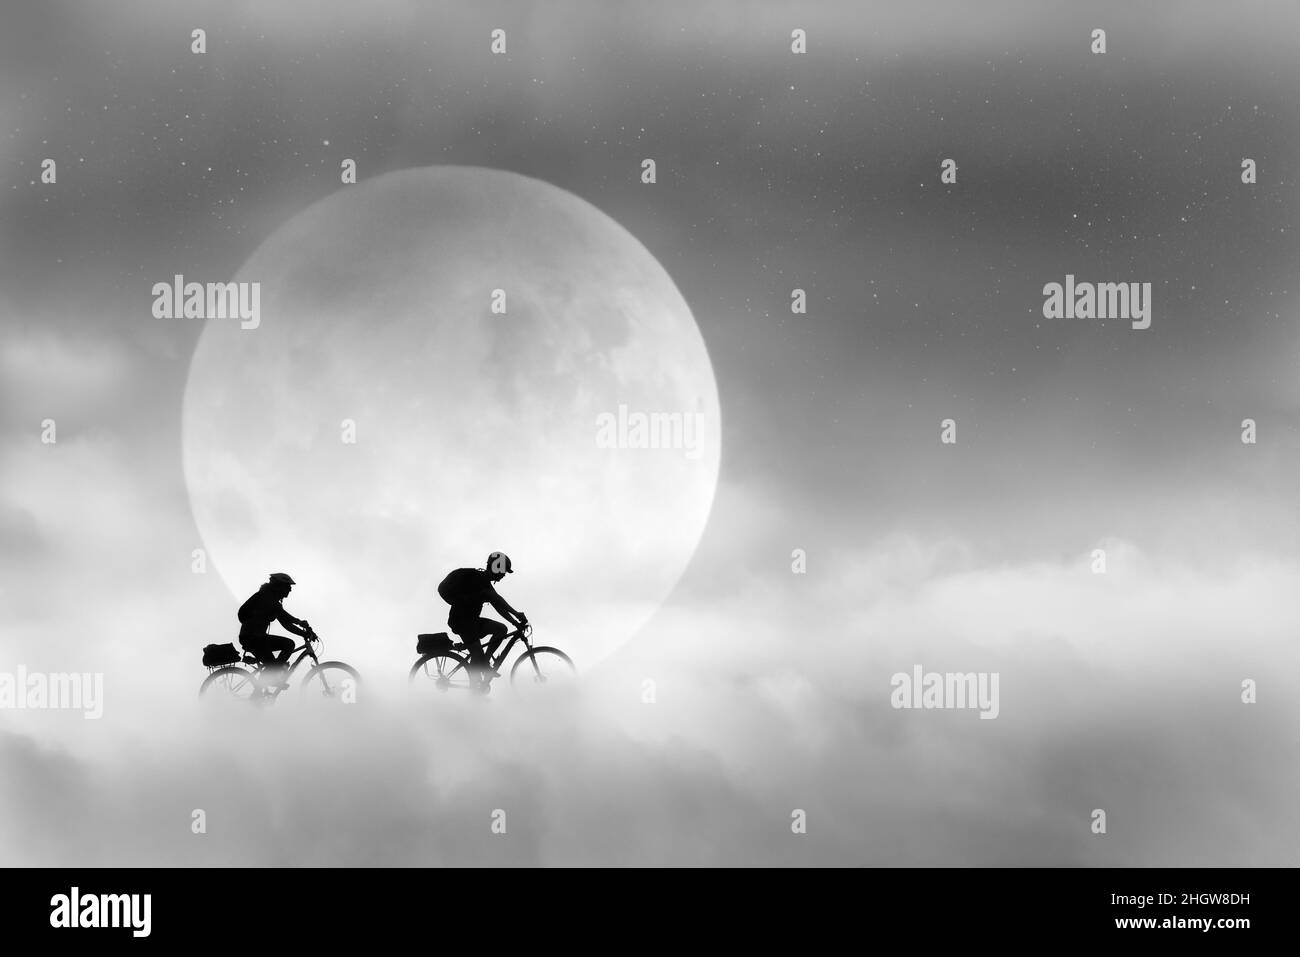 Immagine composita di due giovani in bicicletta tra le nuvole che passano la luna piena con stelle nel cielo. Un'immagine fantasy in bianco e nero. Foto Stock